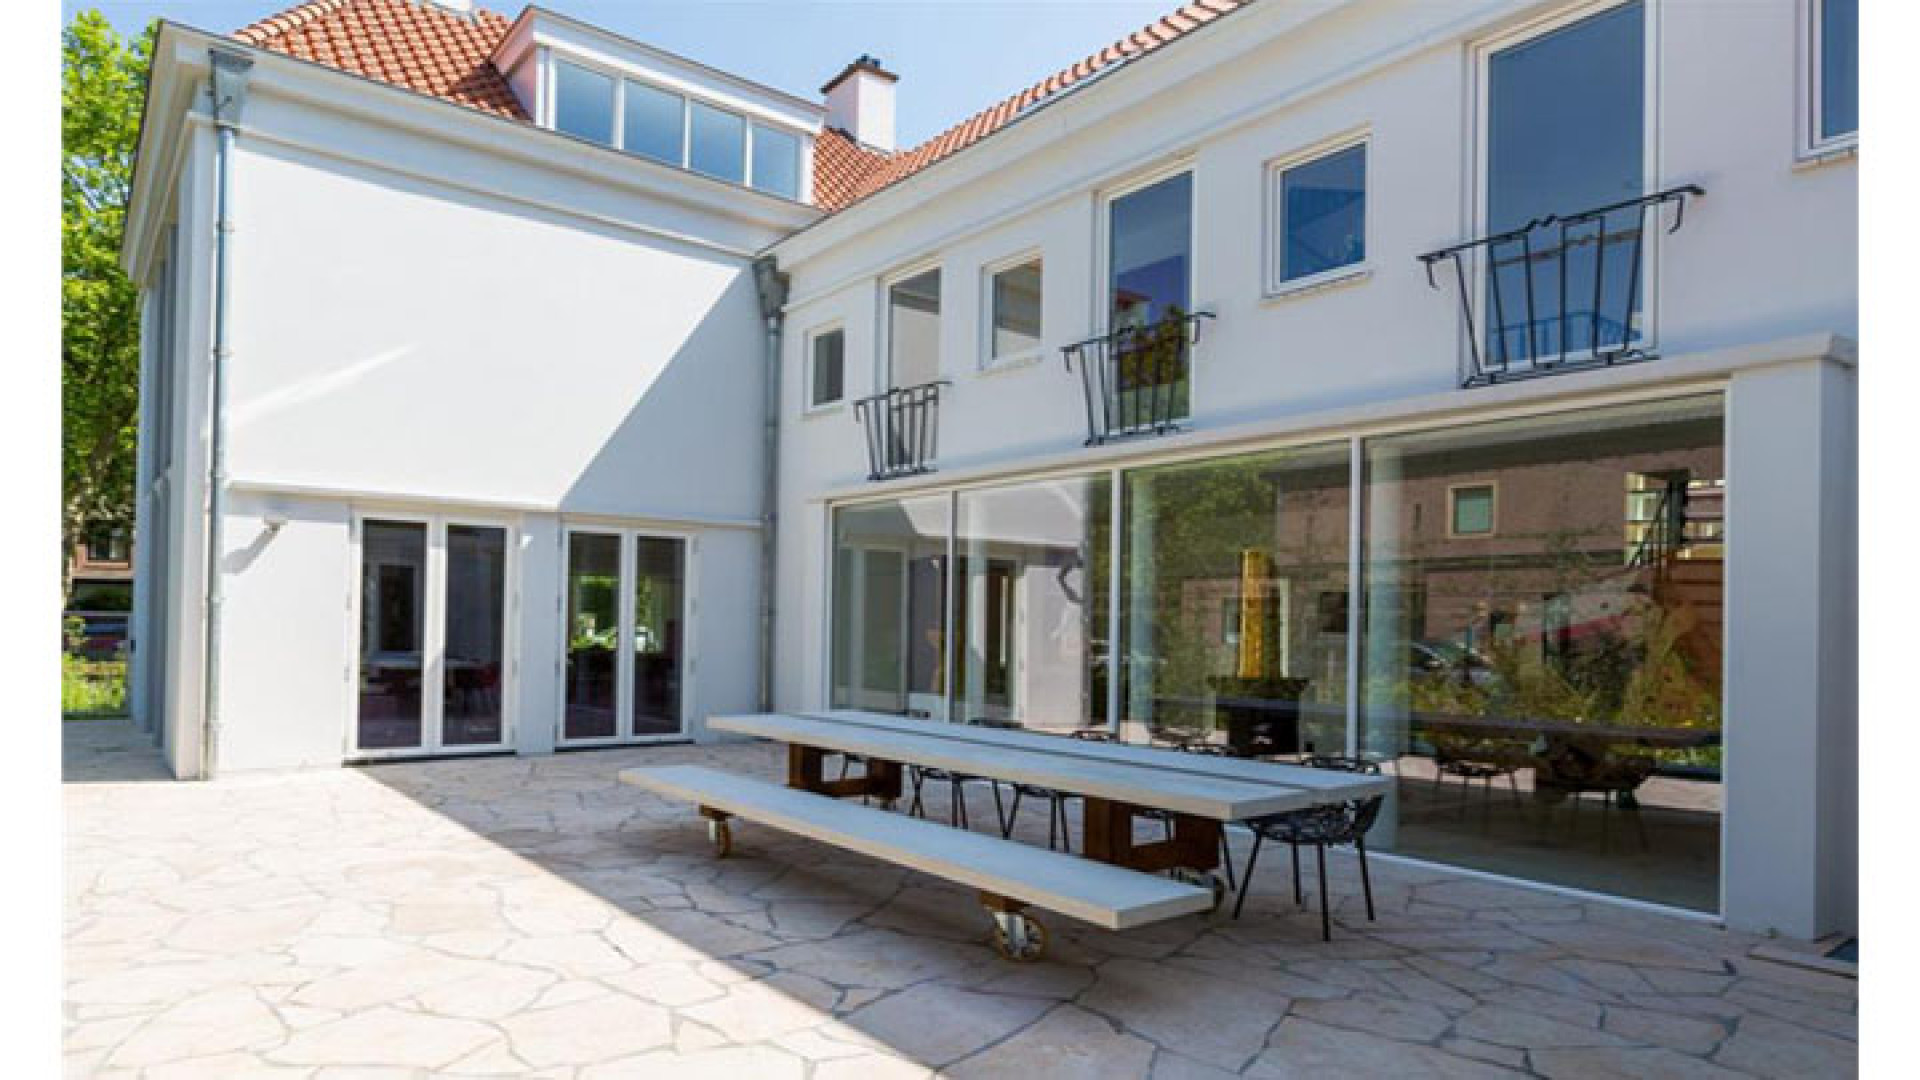 Binnenkijken in prachtige te koop staande villa van Amanda Krabbe en haar vriend Harrie. Zie foto's 16